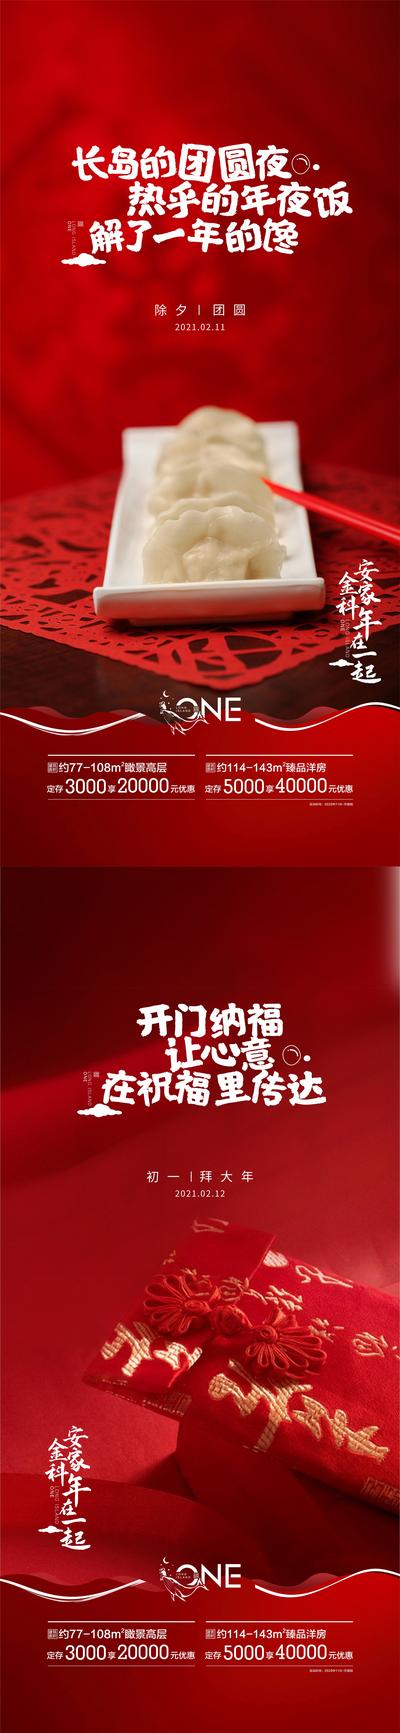 【南门网】海报 房地产 中国传统节日 除夕 初一 年俗 饺子 红包 剪纸